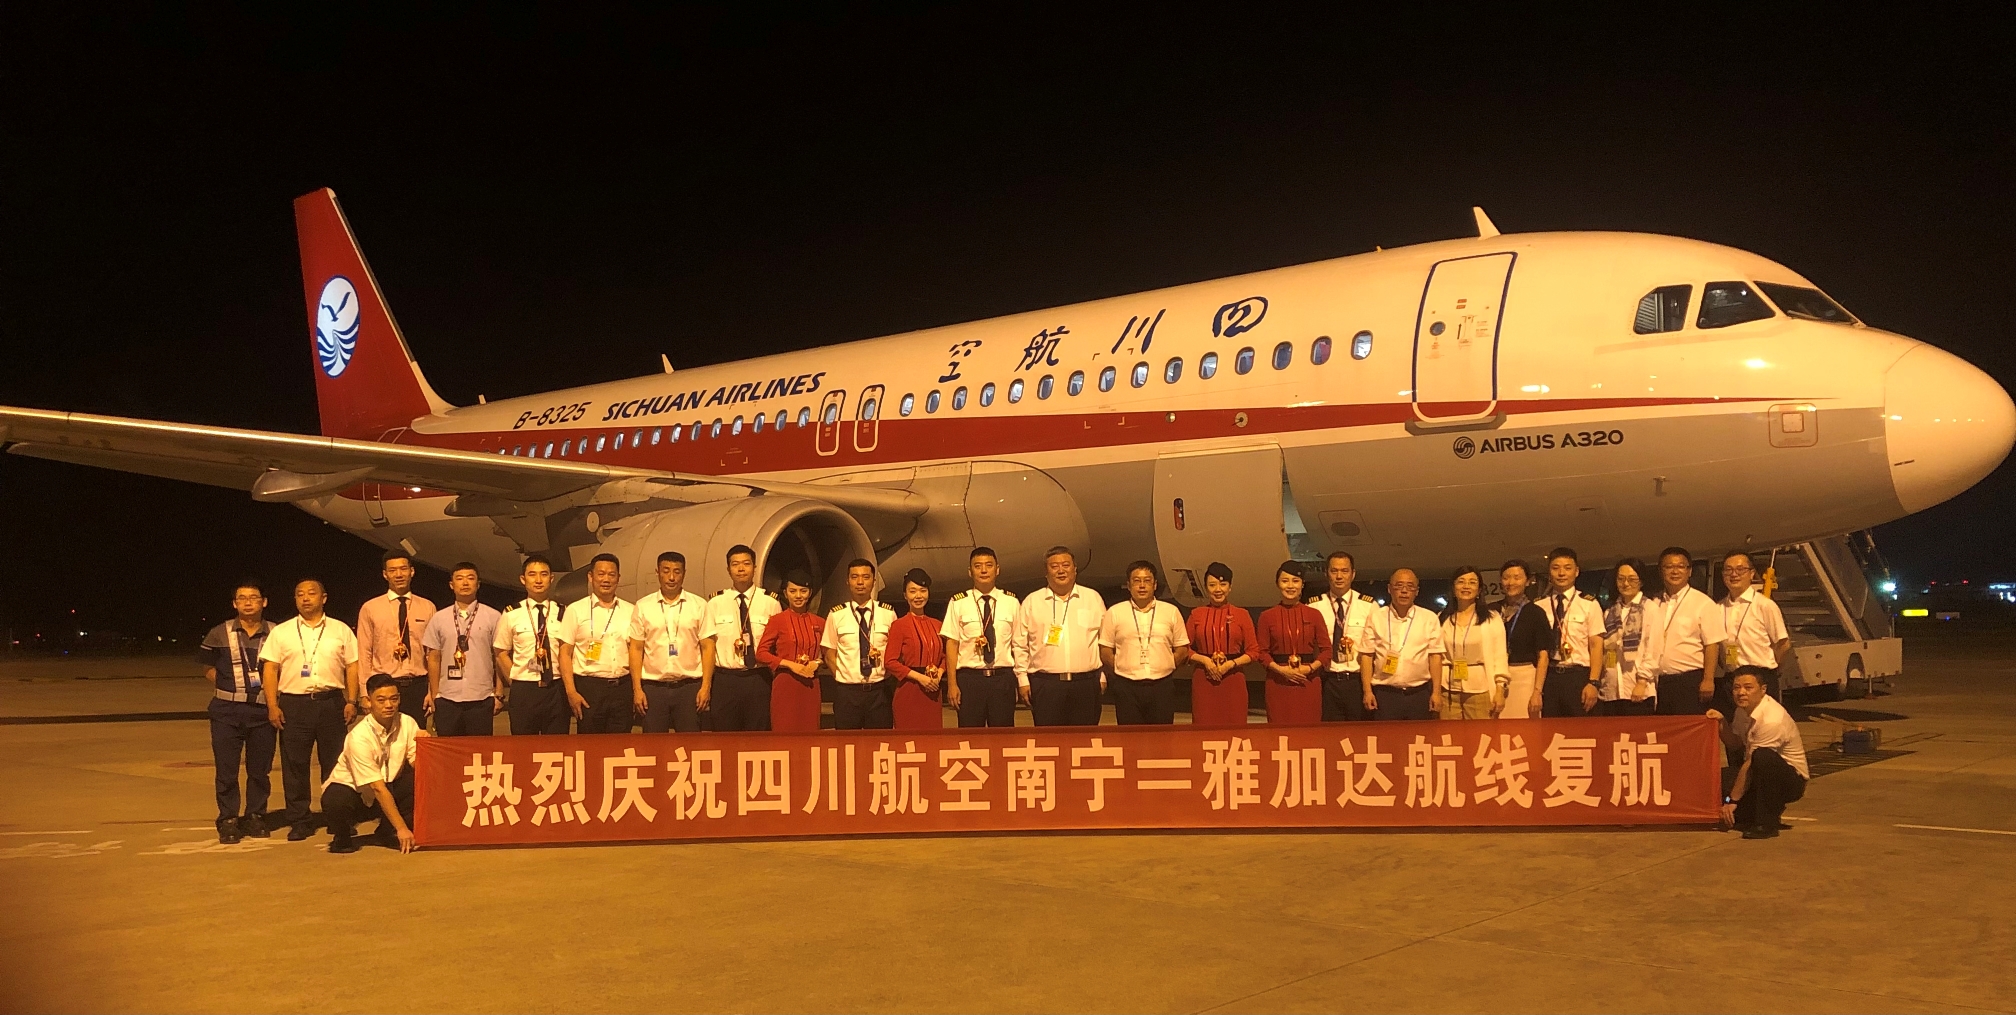 “熊猫之路”客货齐飞！9月15日四川航空恢复南宁=雅加达国际航线